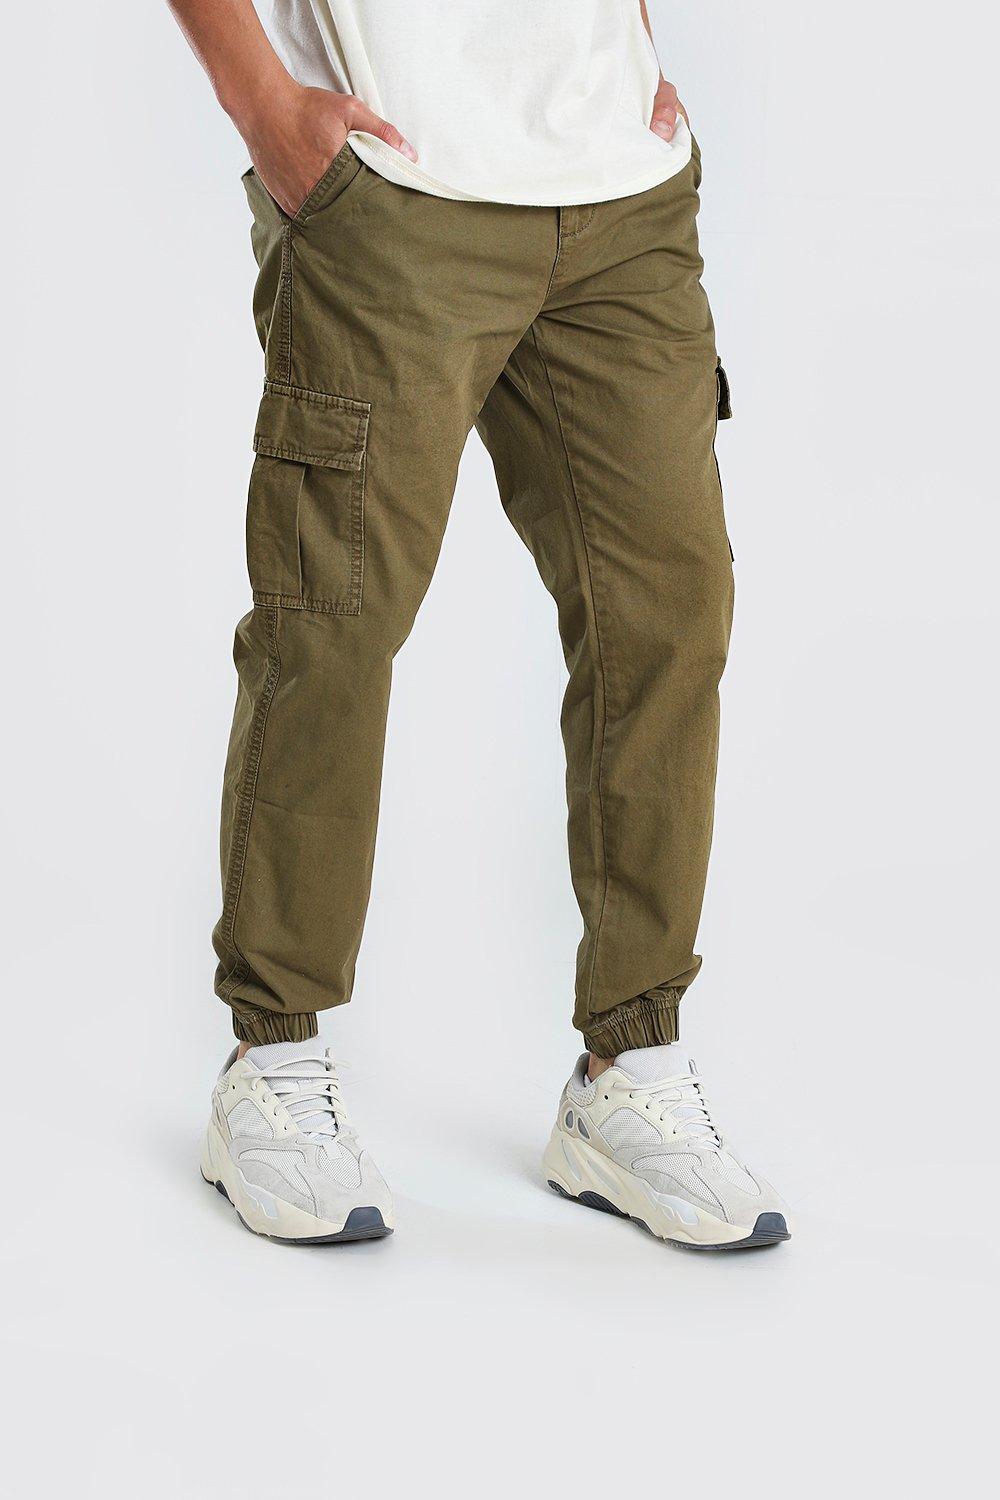 cargo pants stretch waist